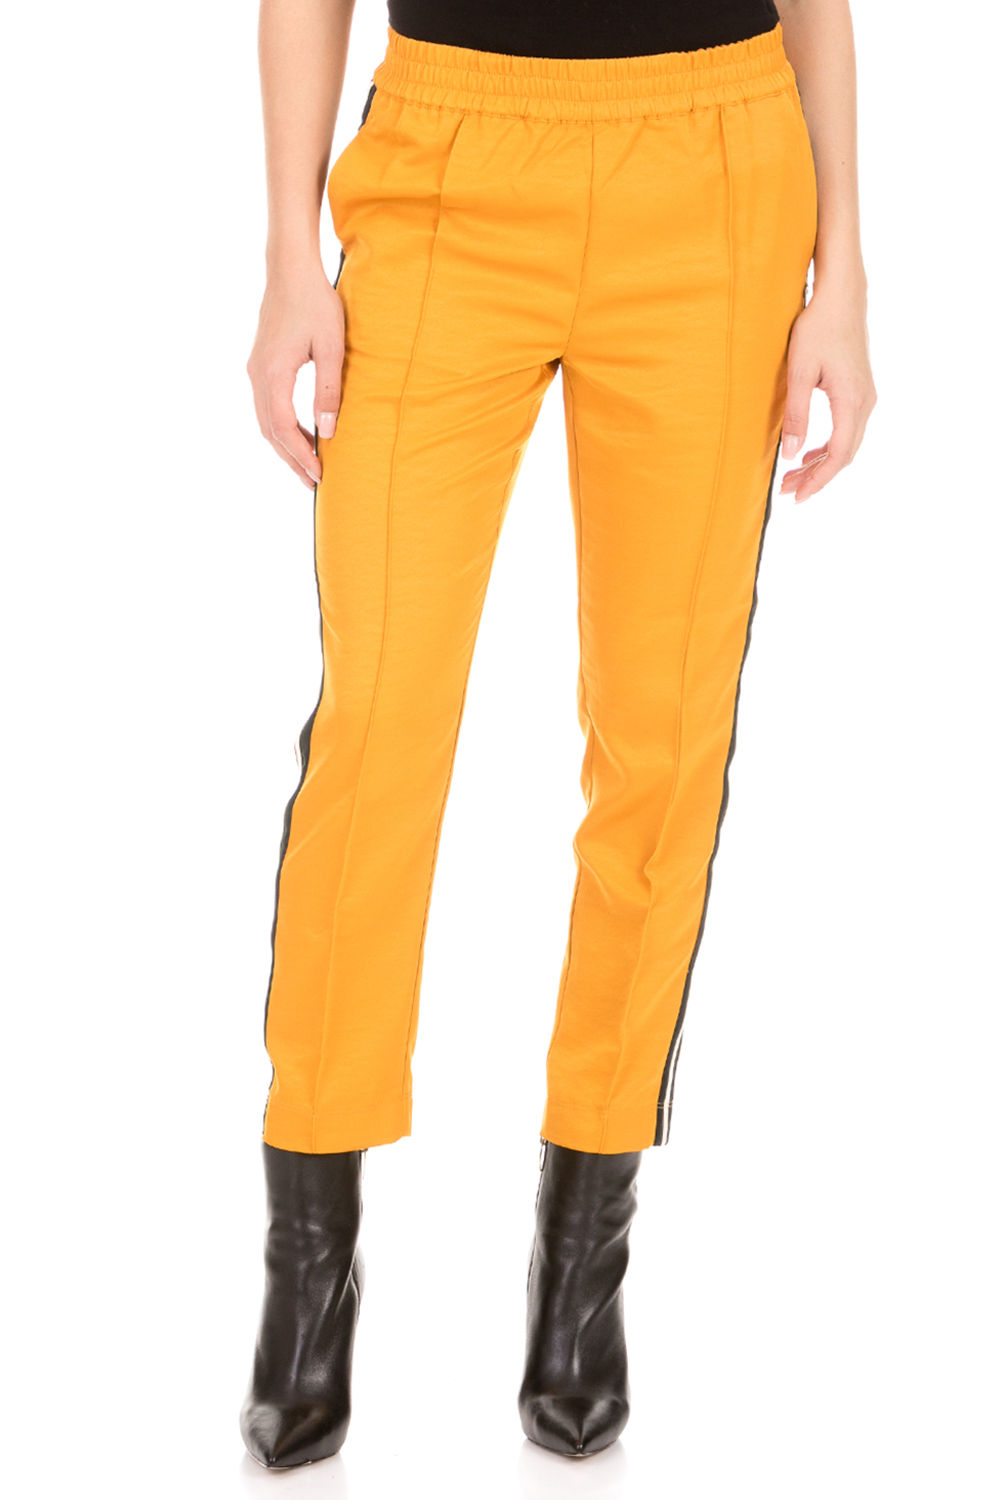 Γυναικεία/Ρούχα/Παντελόνια/Φόρμες SCOTCH & SODA - Γυναικείο παντελόνι φόρμας SCOTCH & SODA κίτρινο